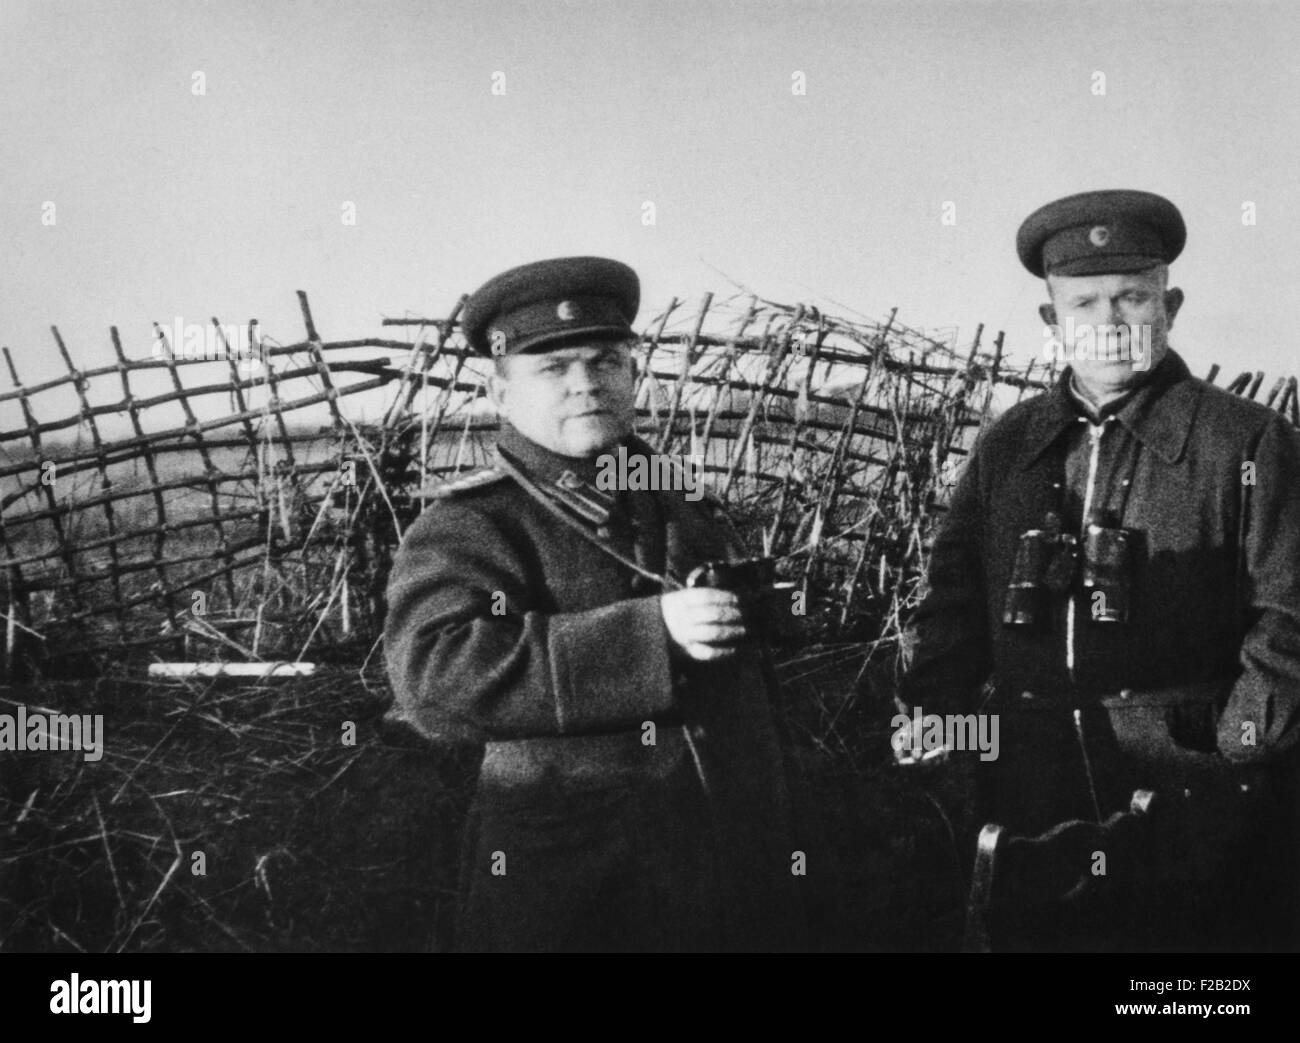 Nikita Khrushchev del Kursk anteriore in Unione Sovietica nel 1943, dopo la vittoria a Stalingrado. Con lui in prima linea photo, è il russo GENERALE N. F. Fatutin, durante la Seconda Guerra Mondiale. (CSU 2015 8 558) Foto Stock